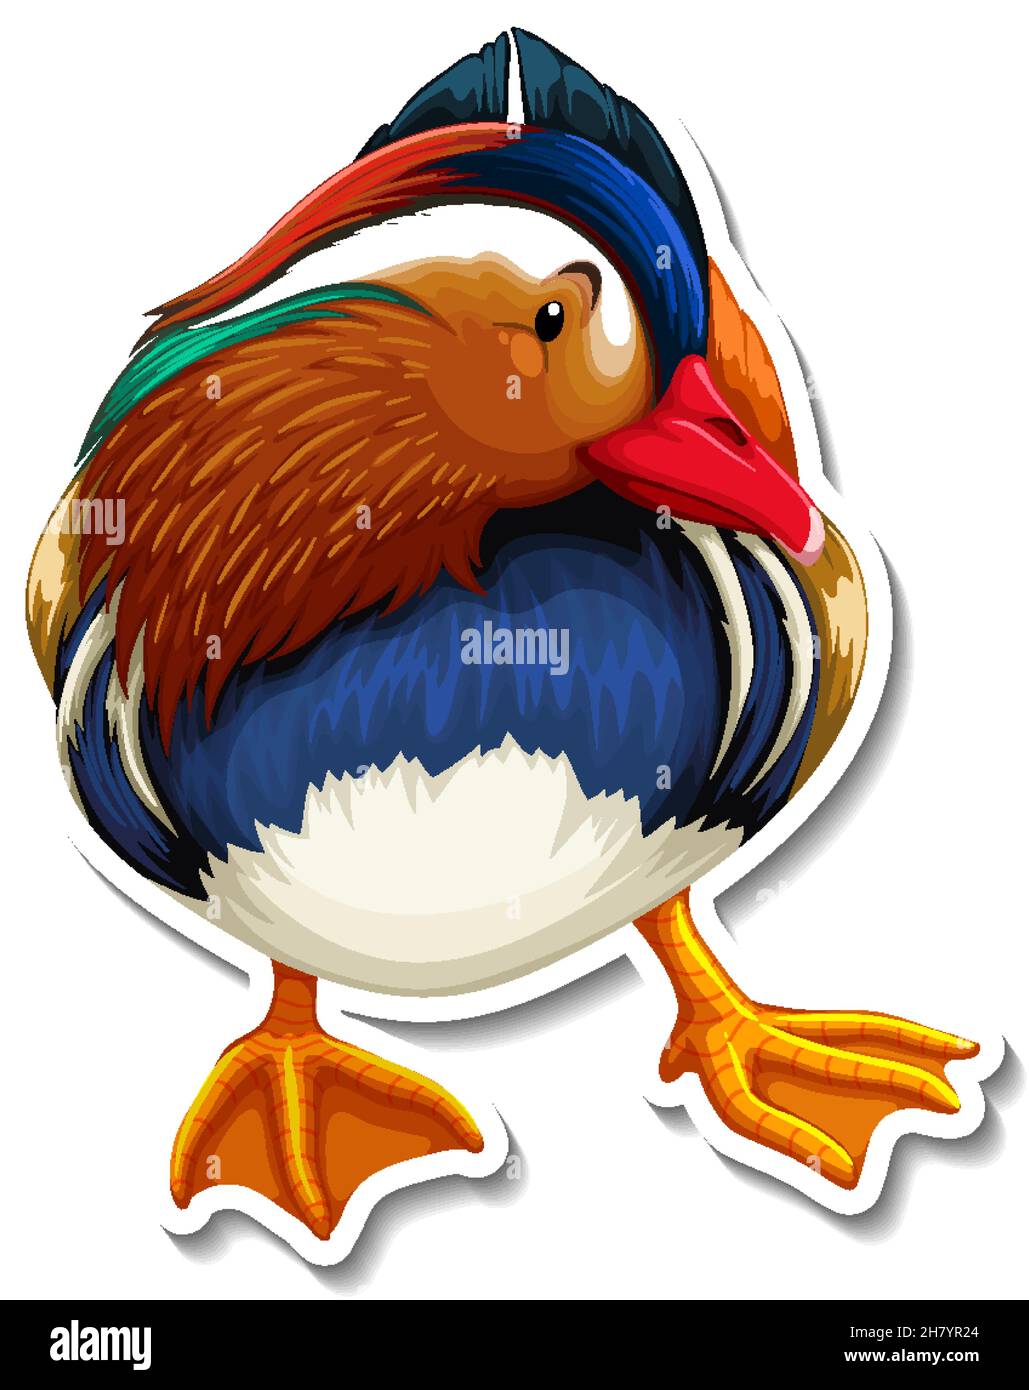 Little bird animal cartoon sticker illustration Stock Vector Image & Art -  Alamy